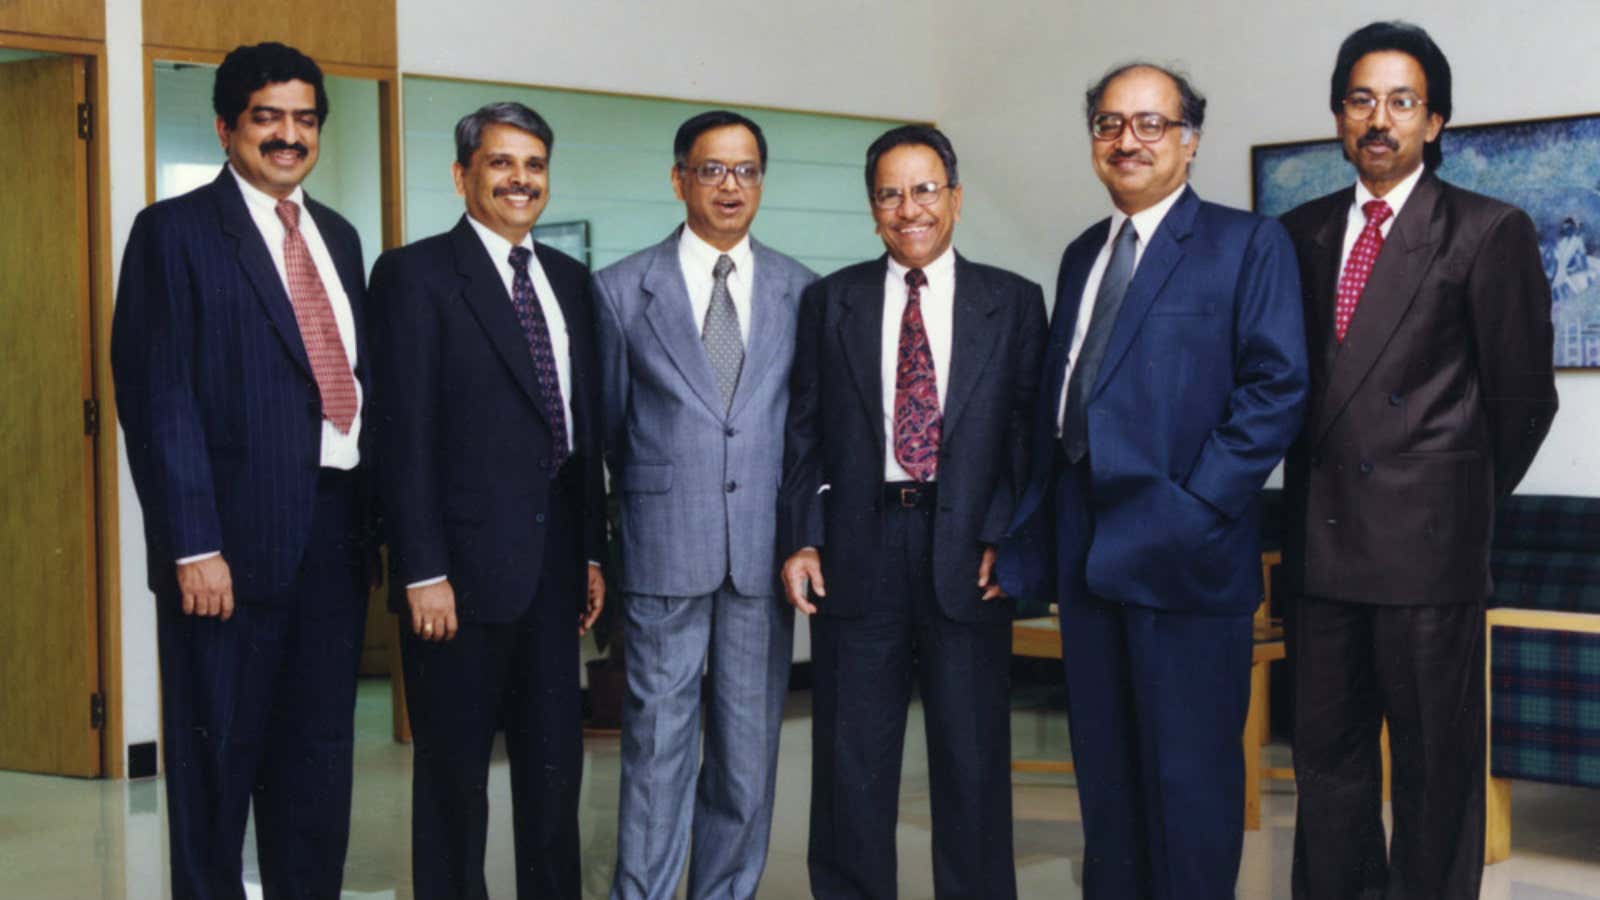 Back in the day: (from left) Nandan Nilekani, Kris Gopalakrishnan, NR Narayana Murthy, NS Raghavan, K Dinesh, SD Shibulal.